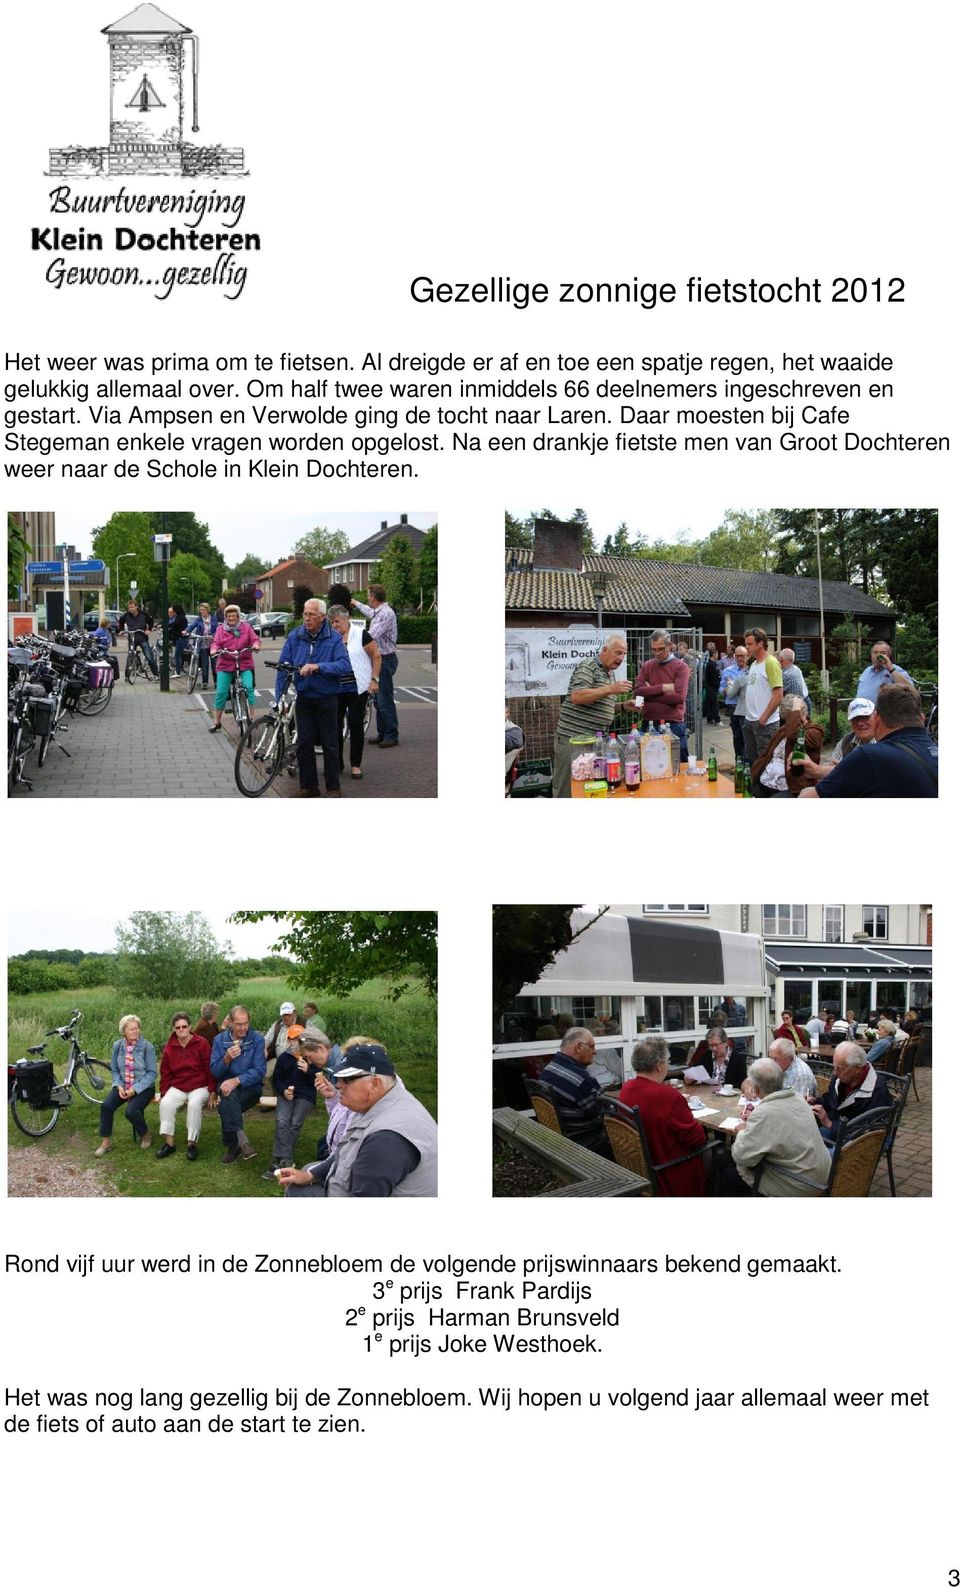 Daar moesten bij Cafe Stegeman enkele vragen worden opgelost. Na een drankje fietste men van Groot Dochteren weer naar de Schole in Klein Dochteren.